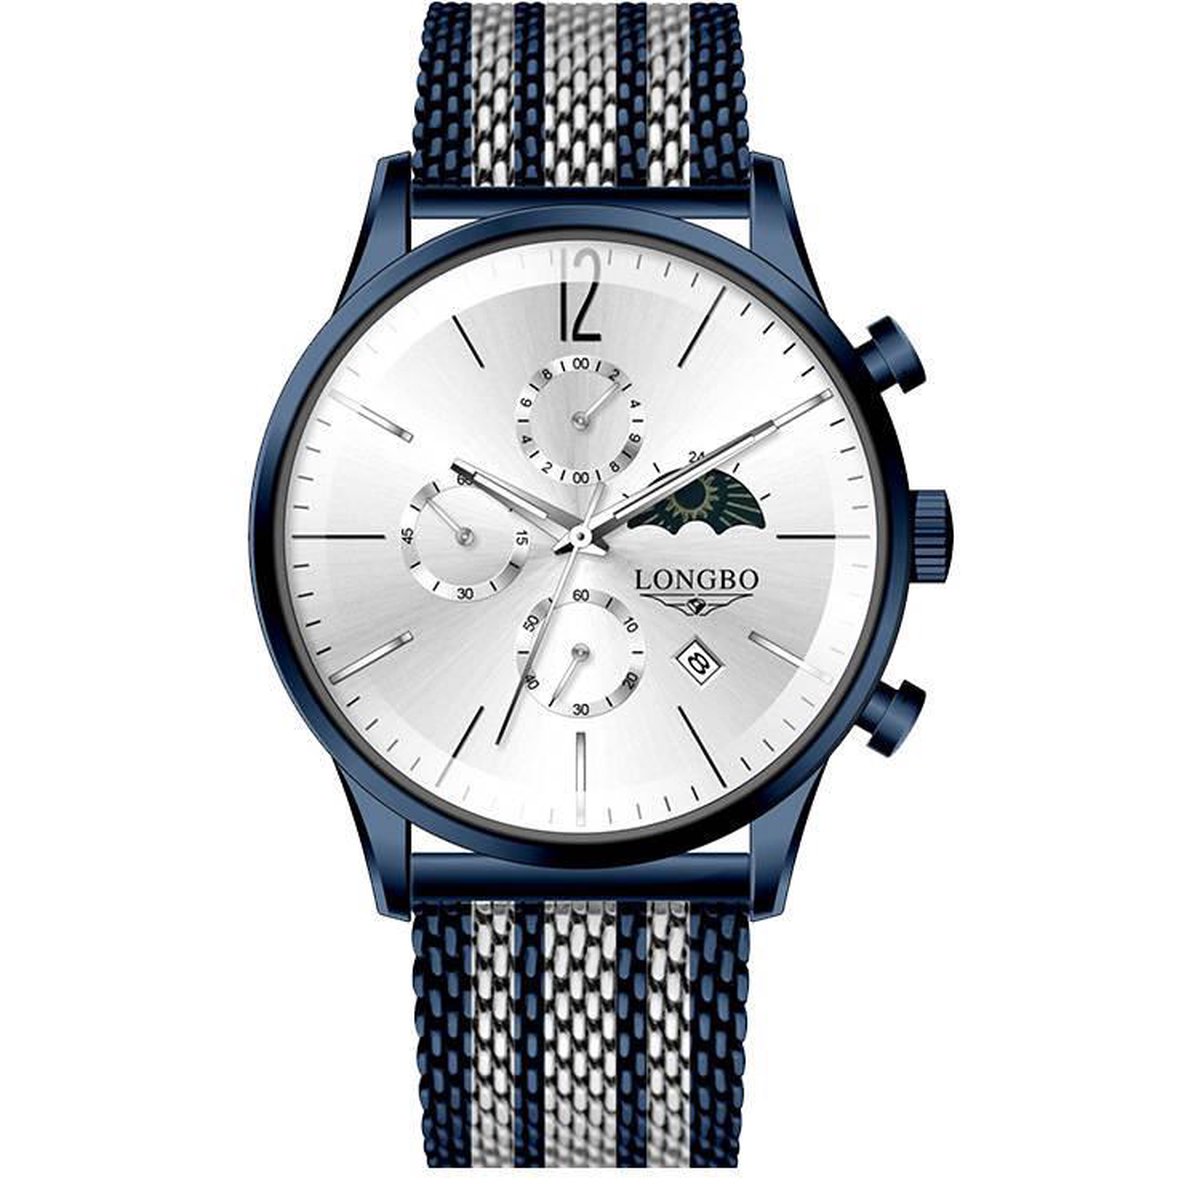 Longbo - Heren Horloge - Blauw/Zilver/Blauw - 43mm (Productvideo)